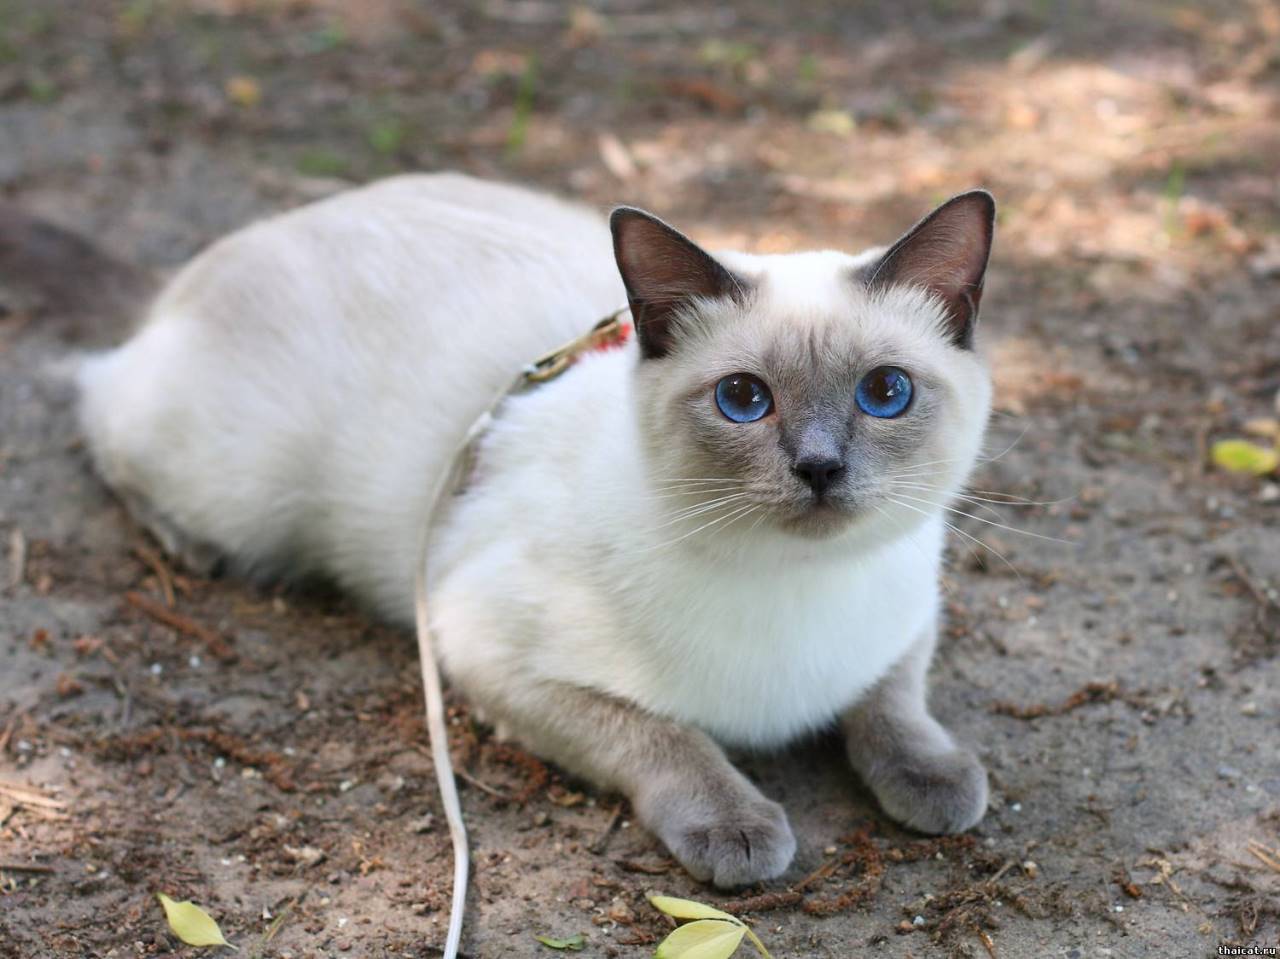 Тайская кошка. описание, особенности, уход и цена тайской кошки